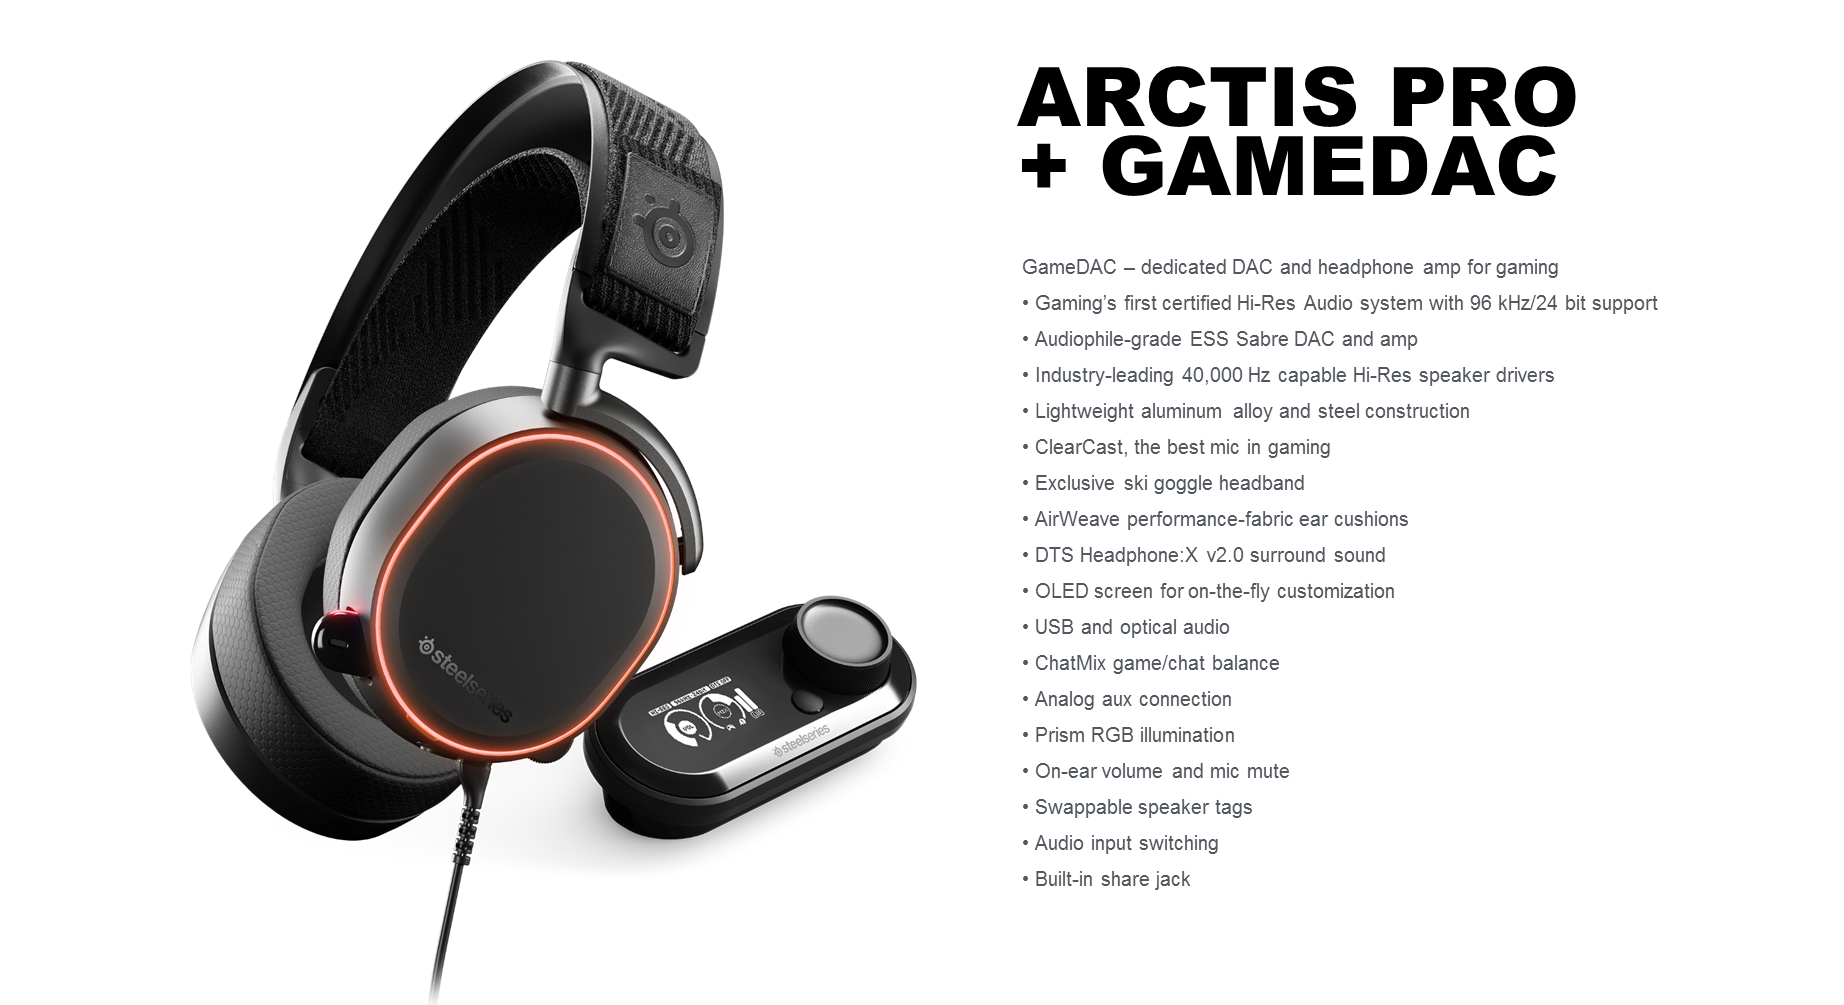 Steelseries - Arctis Pro + GameDAC Gaming headset - sort Steelseries